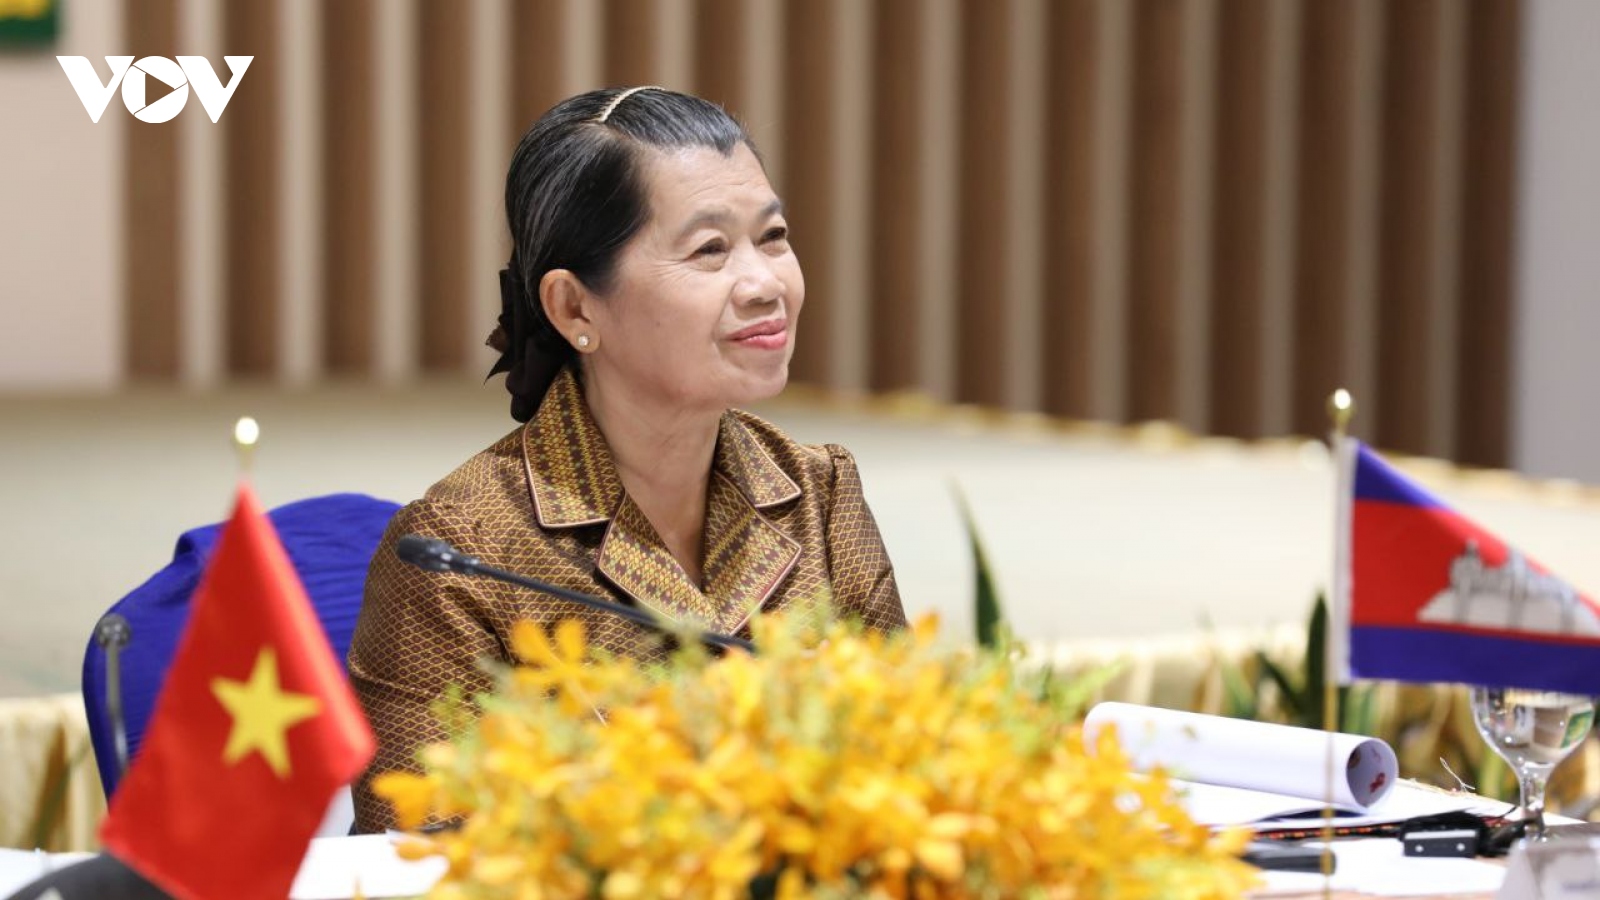 Phó Thủ tướng Men Sam An: Mối quan hệ Việt Nam – Campuchia mãi mãi bền vững